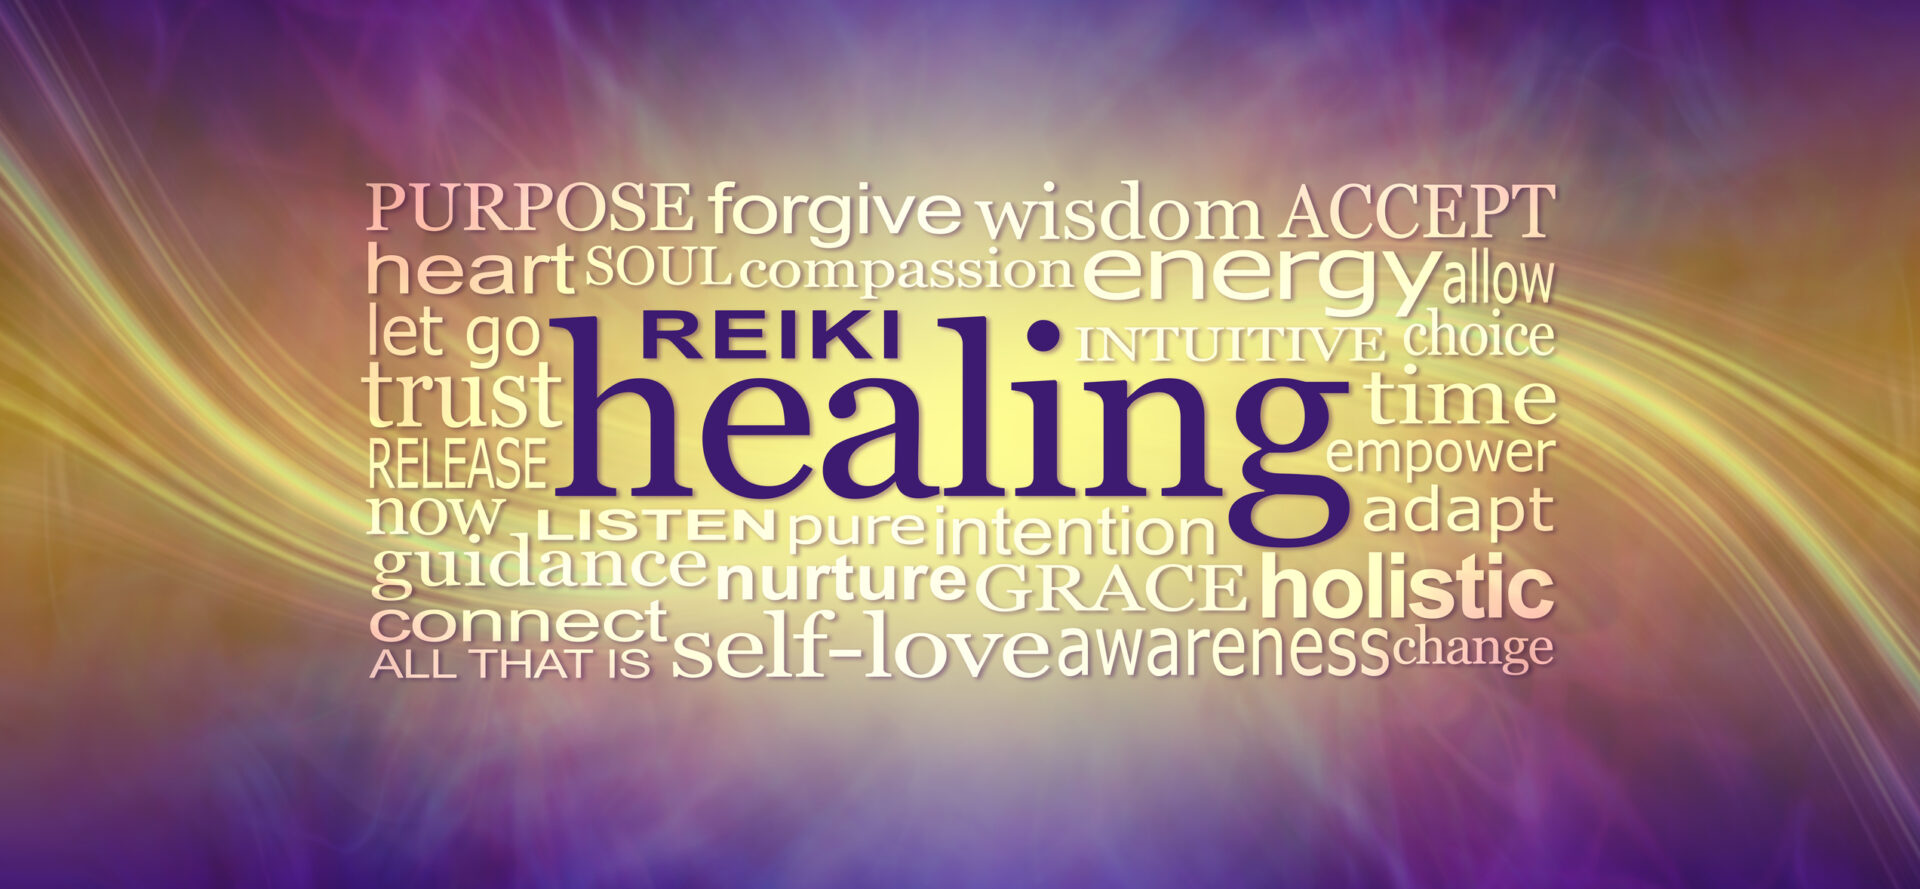 Reiki Healing Words Wall Art Banner